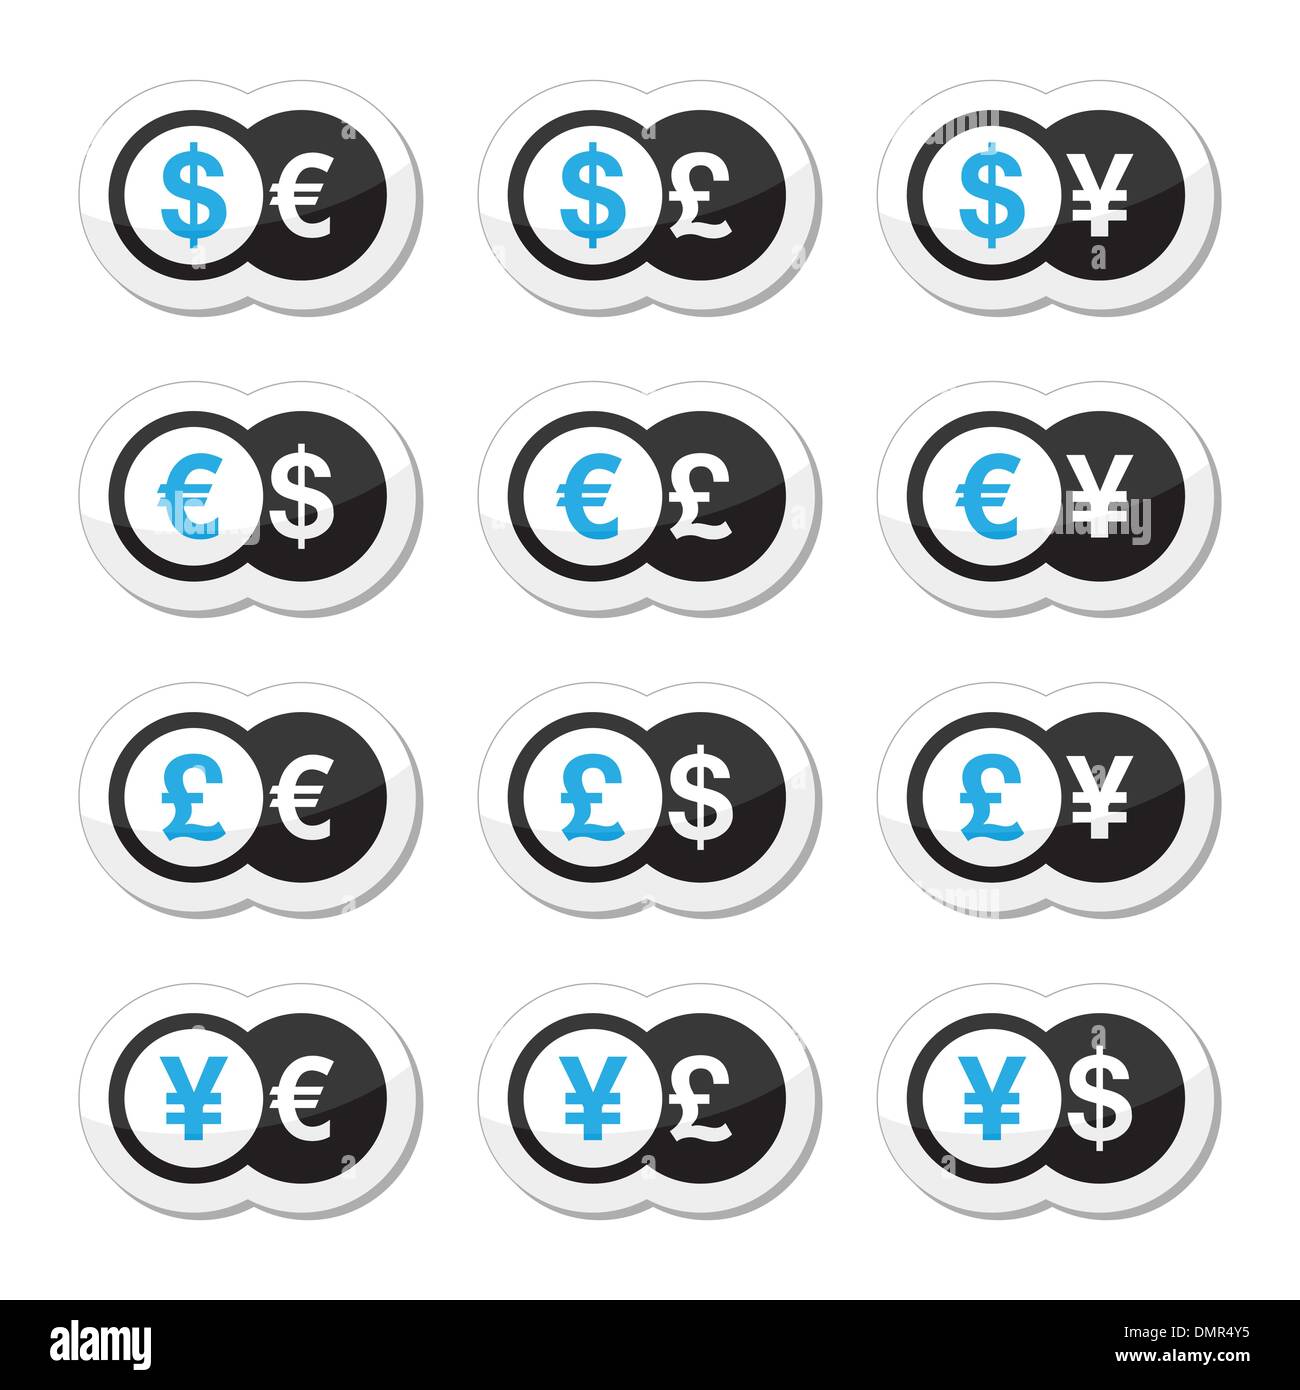 Währung-Austausch-Icons set - Dollar, Euro, Yen, Pfund Stock Vektor